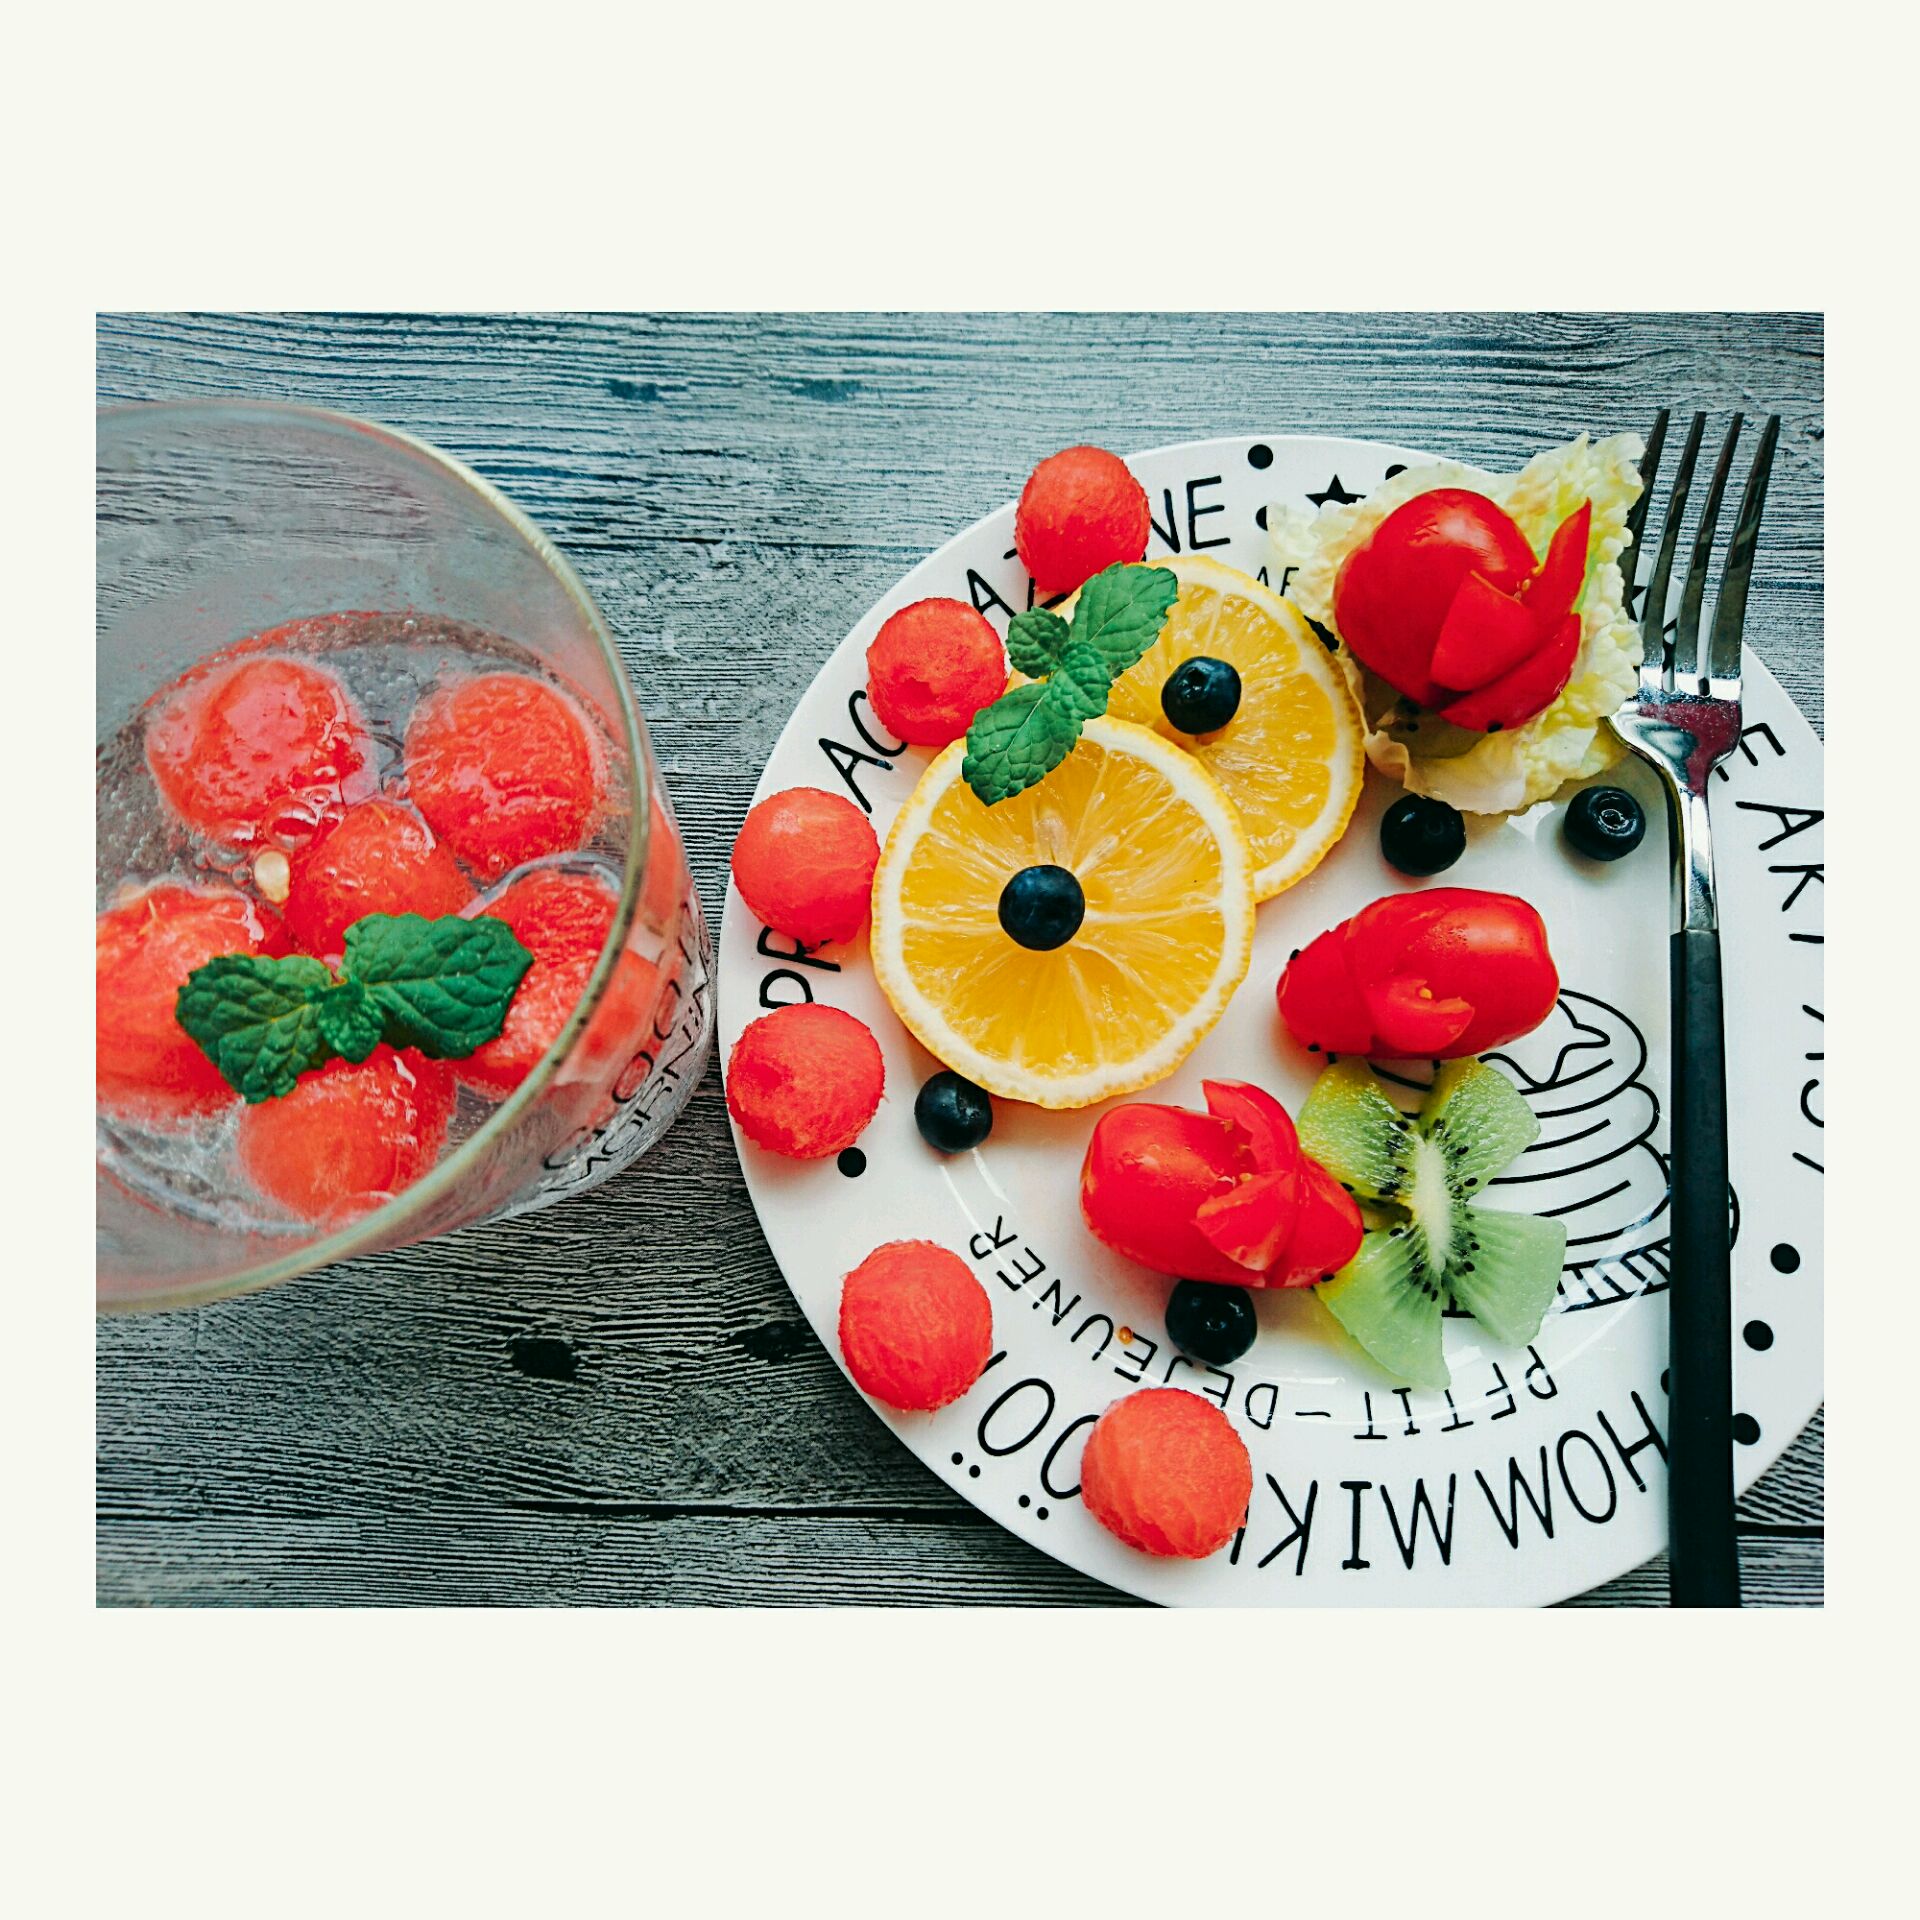 水果蔬菜拼盘怎么做_水果蔬菜拼盘的做法_豆果美食